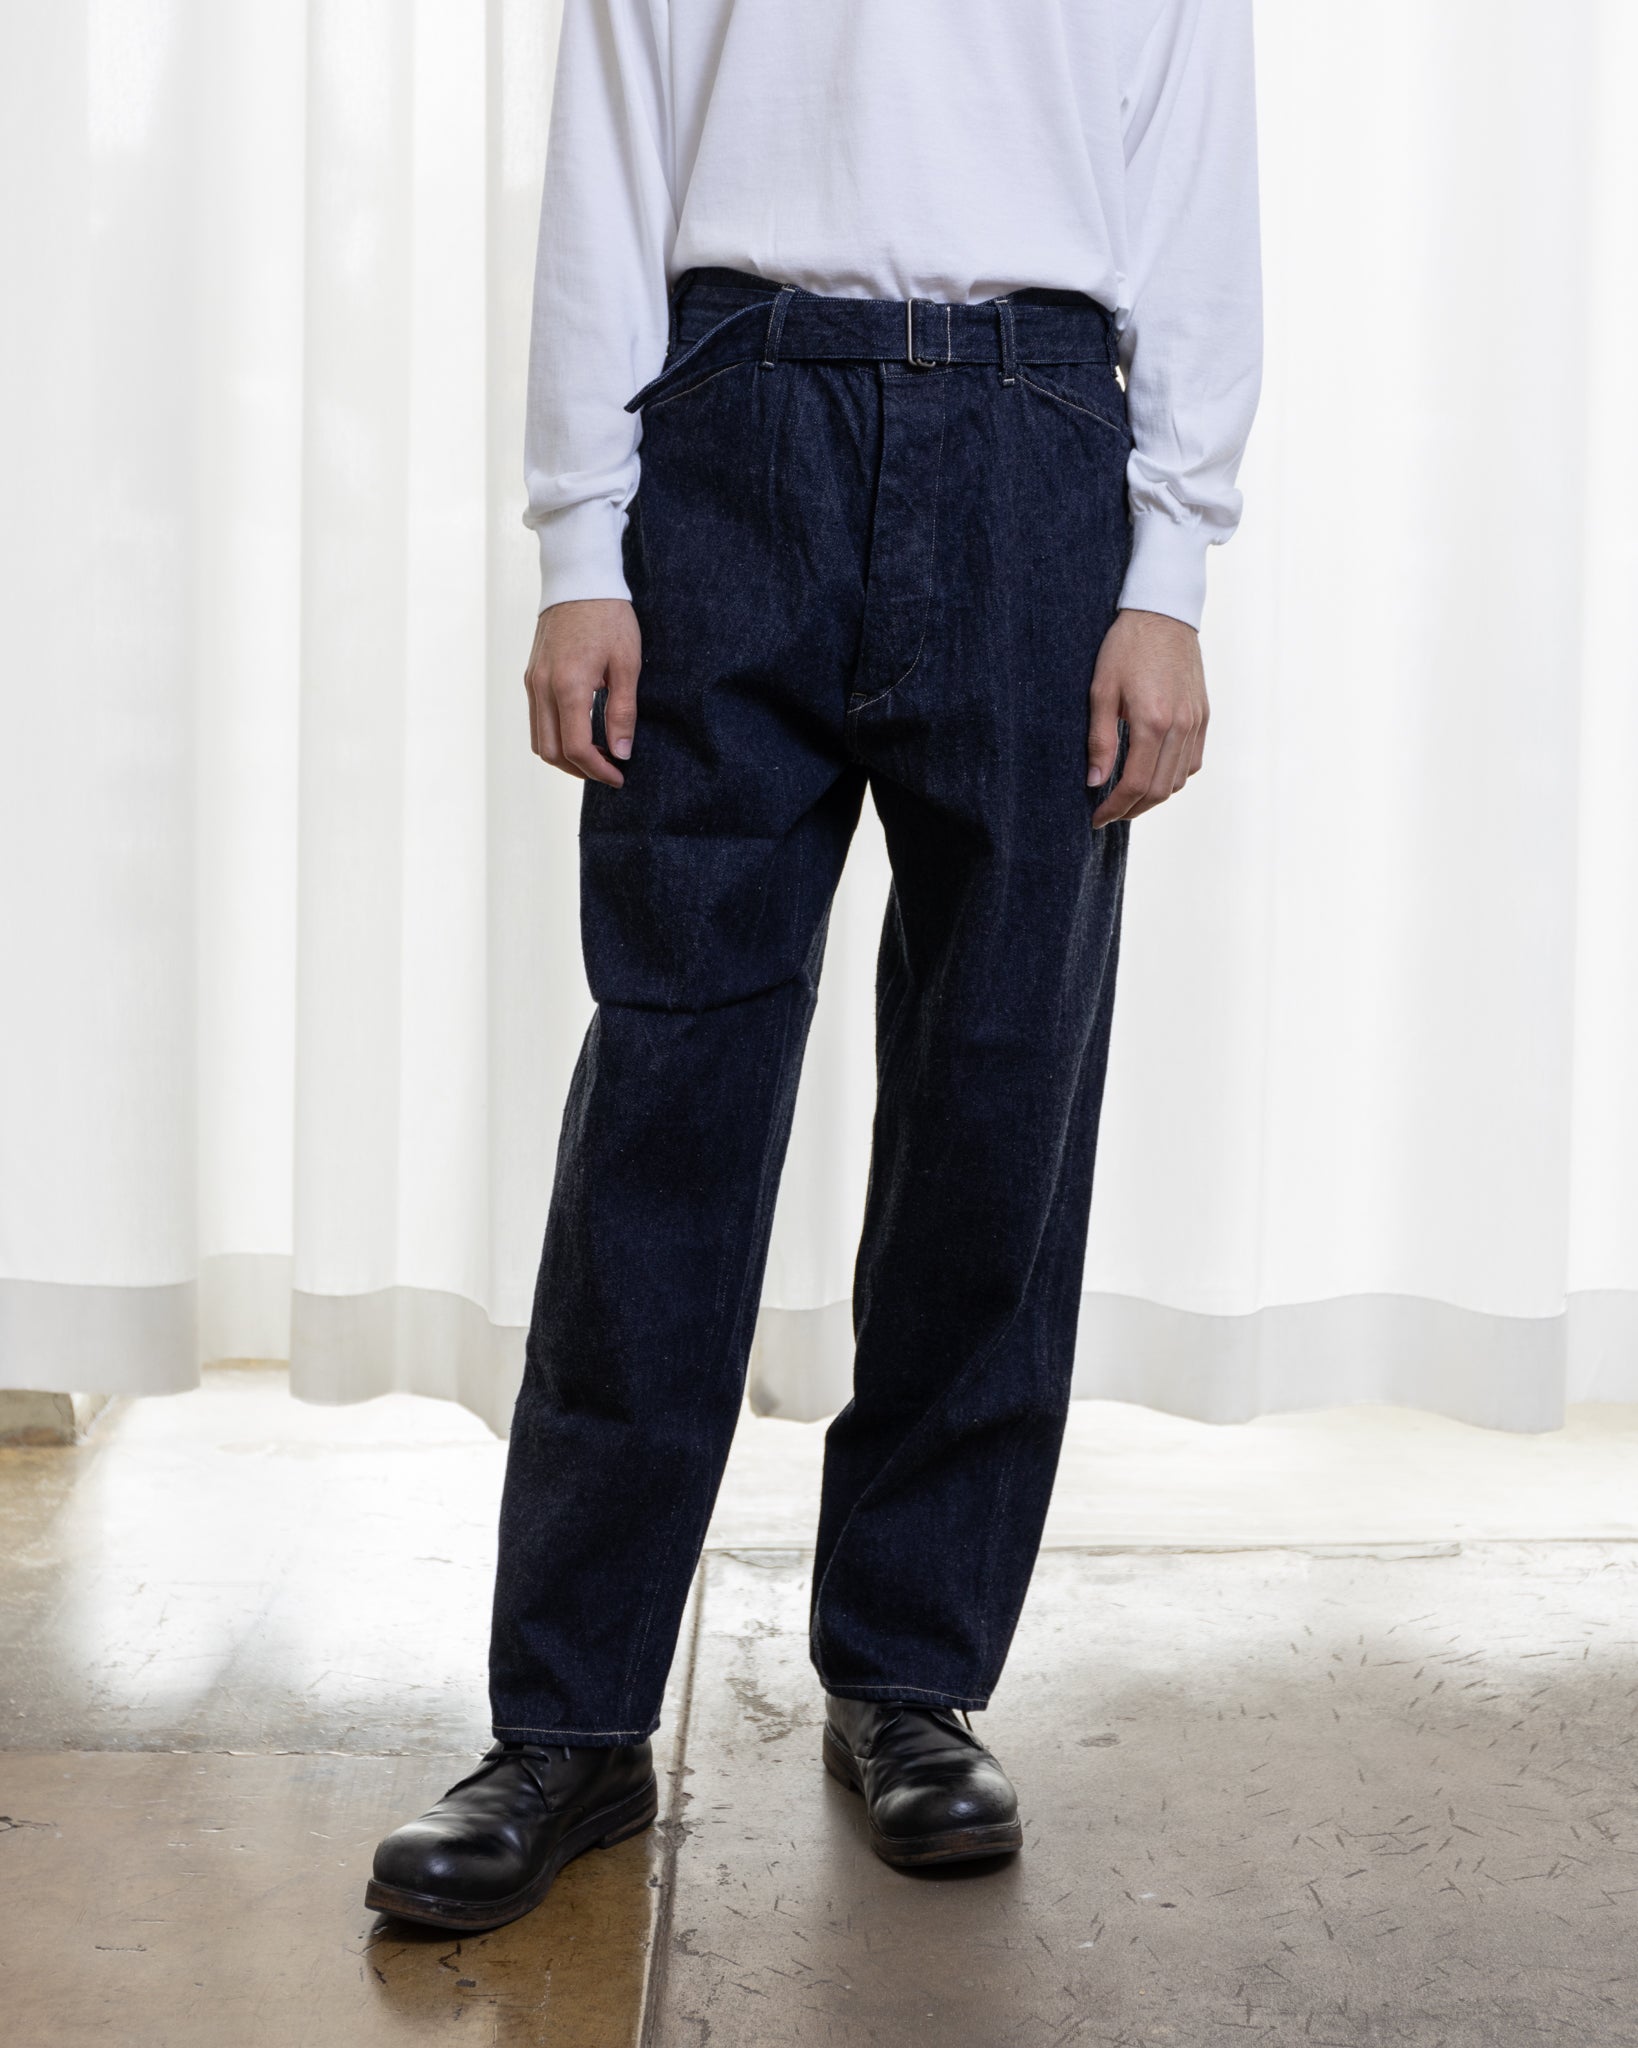 COMOLI belted pants サイズ2 22AW37400 - パンツ